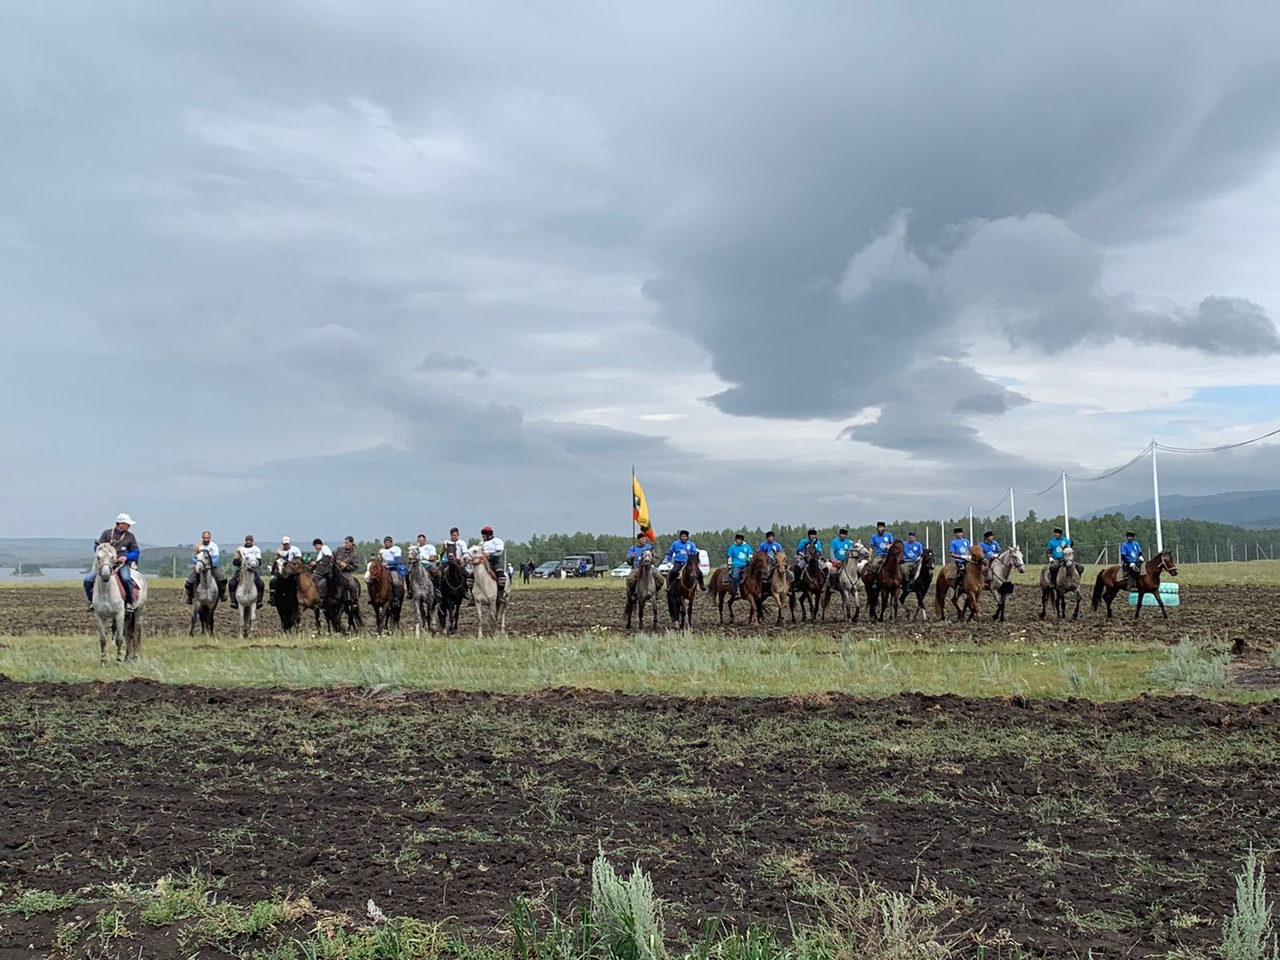 В Баймакском районе стартовал фестиваль лошадей башкирской породы “Башҡорт аты” (“Башкирская лошадь”)